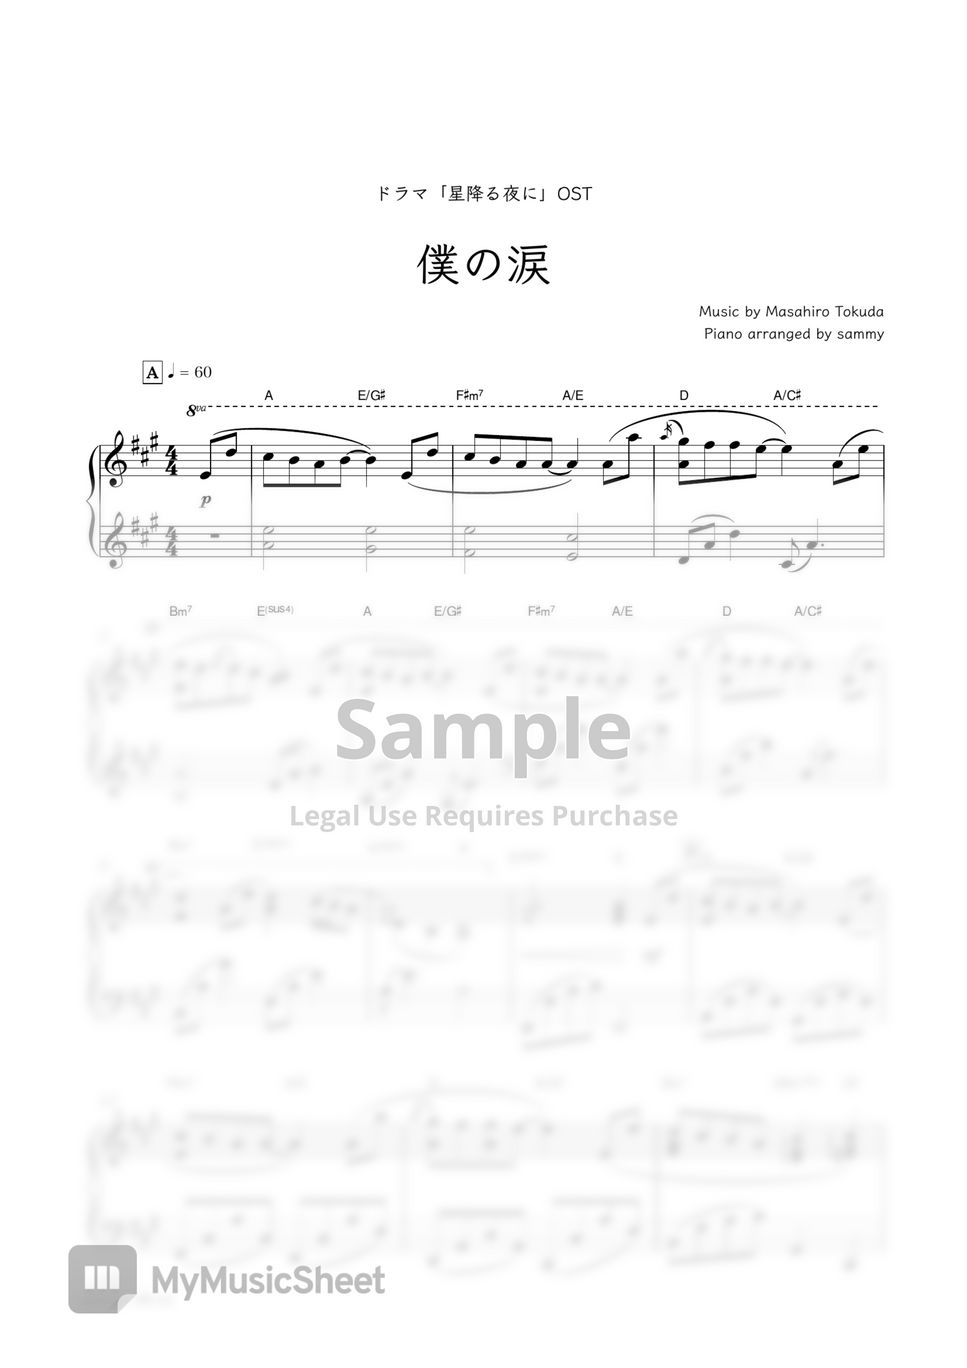 日剧《于星降之夜(星降る夜に)》OST - Boku no Namida (僕の涙) by sammy